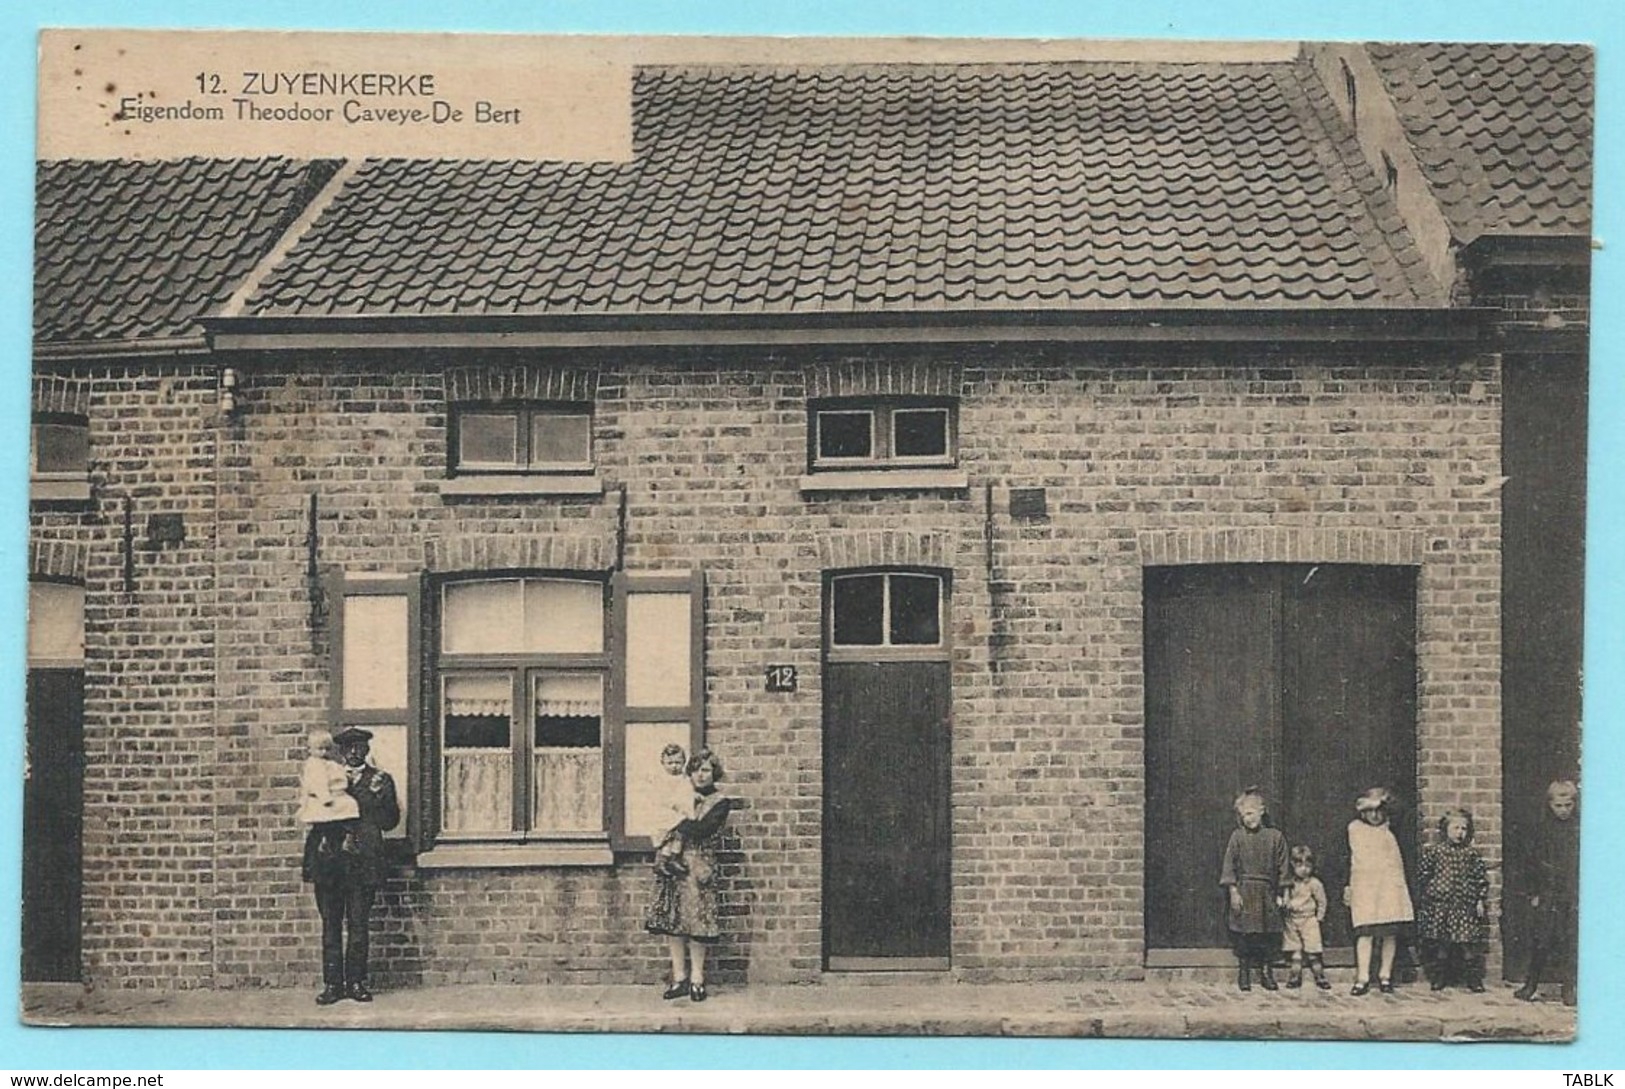 1842 - BELGIE - ZUIENKERKE - EIGENDOM THEODOOR CAVEYE_DE BERT - Zuienkerke